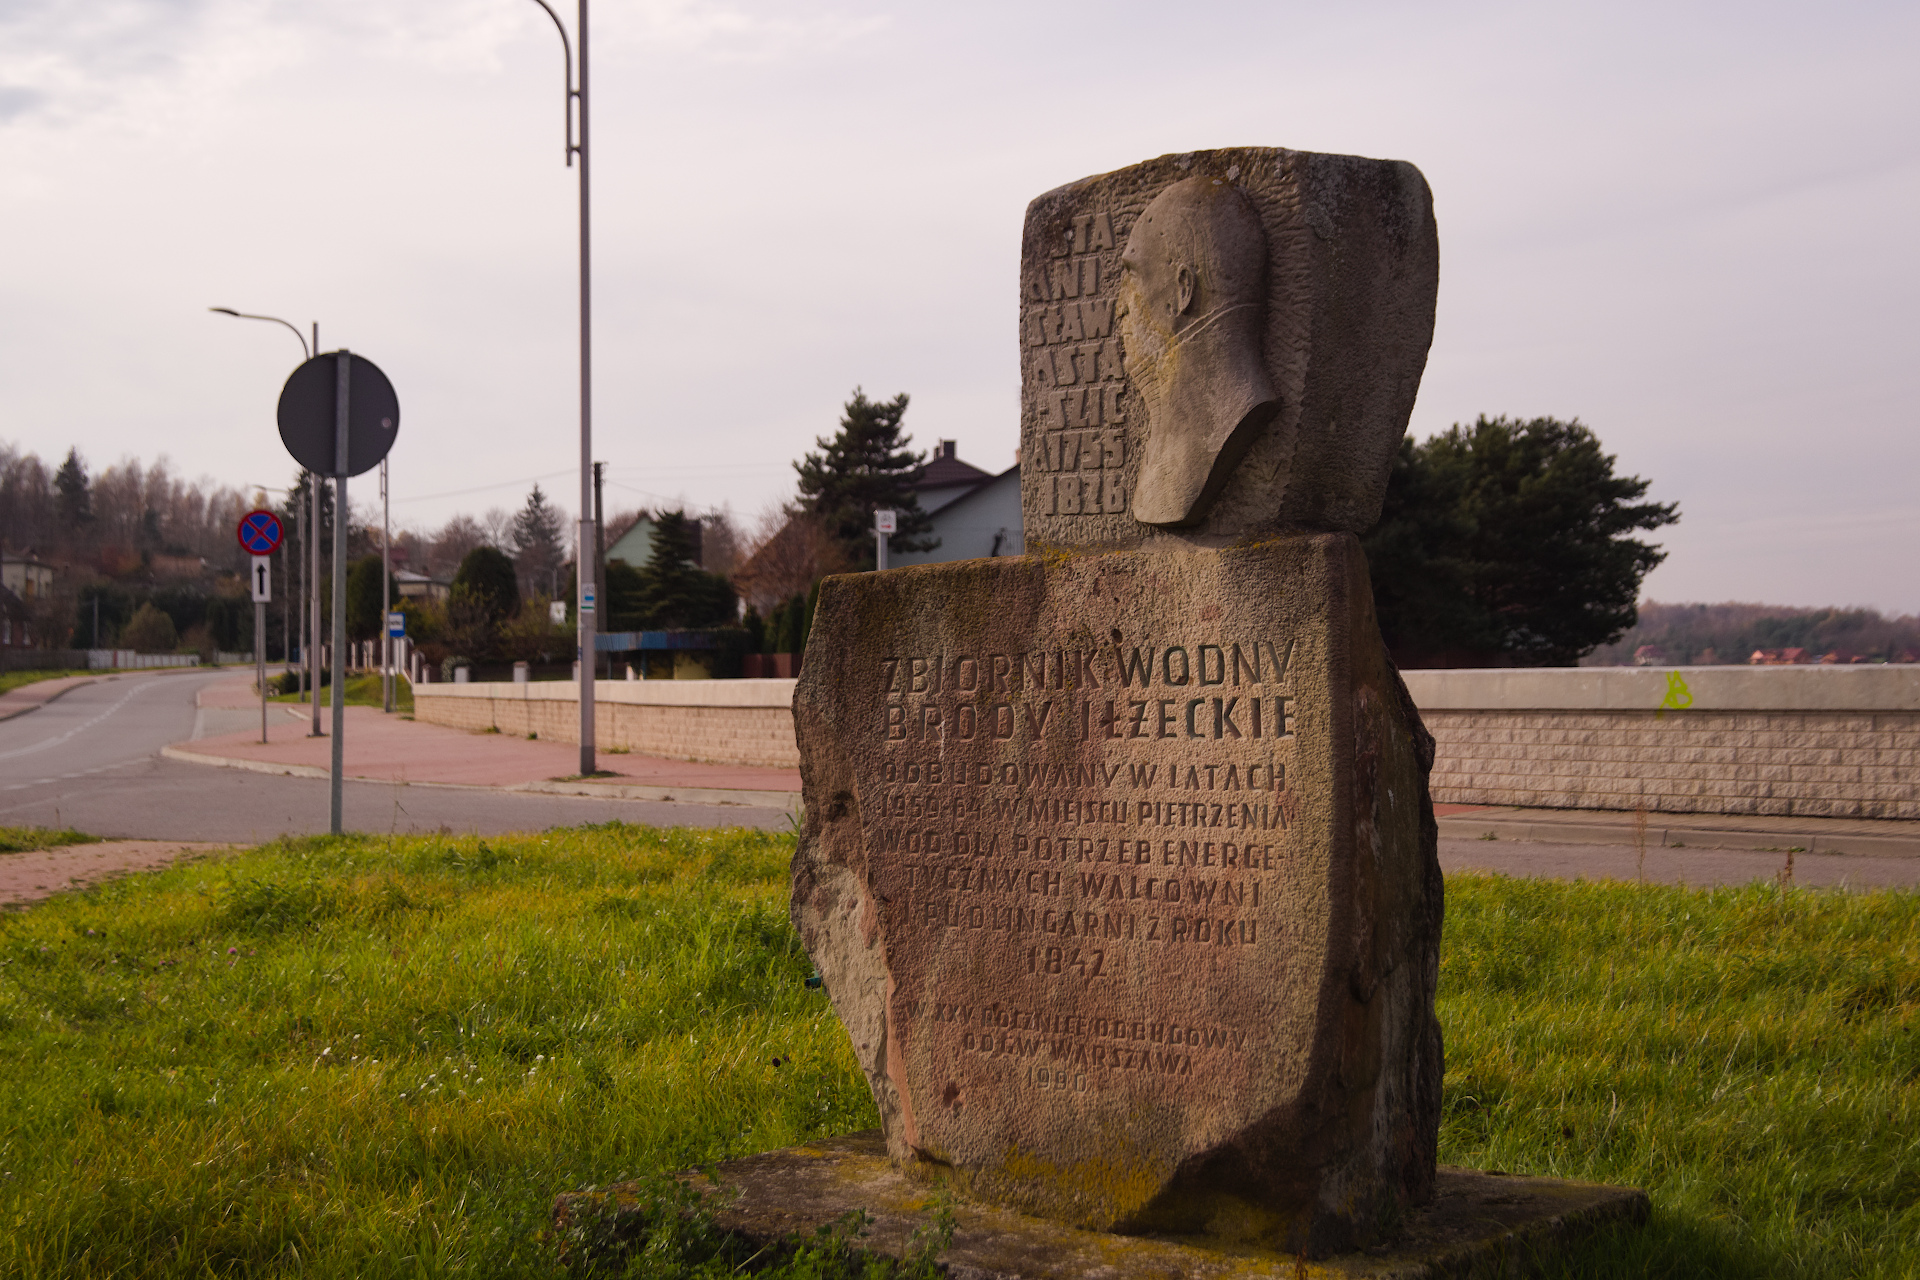 Głaz-pomnik w pobliżu tamy w Brodach, upamiętniający Stanisława Staszica-twórcę XIX-so wiecznego ośrodka przemysłowego w Brodach.